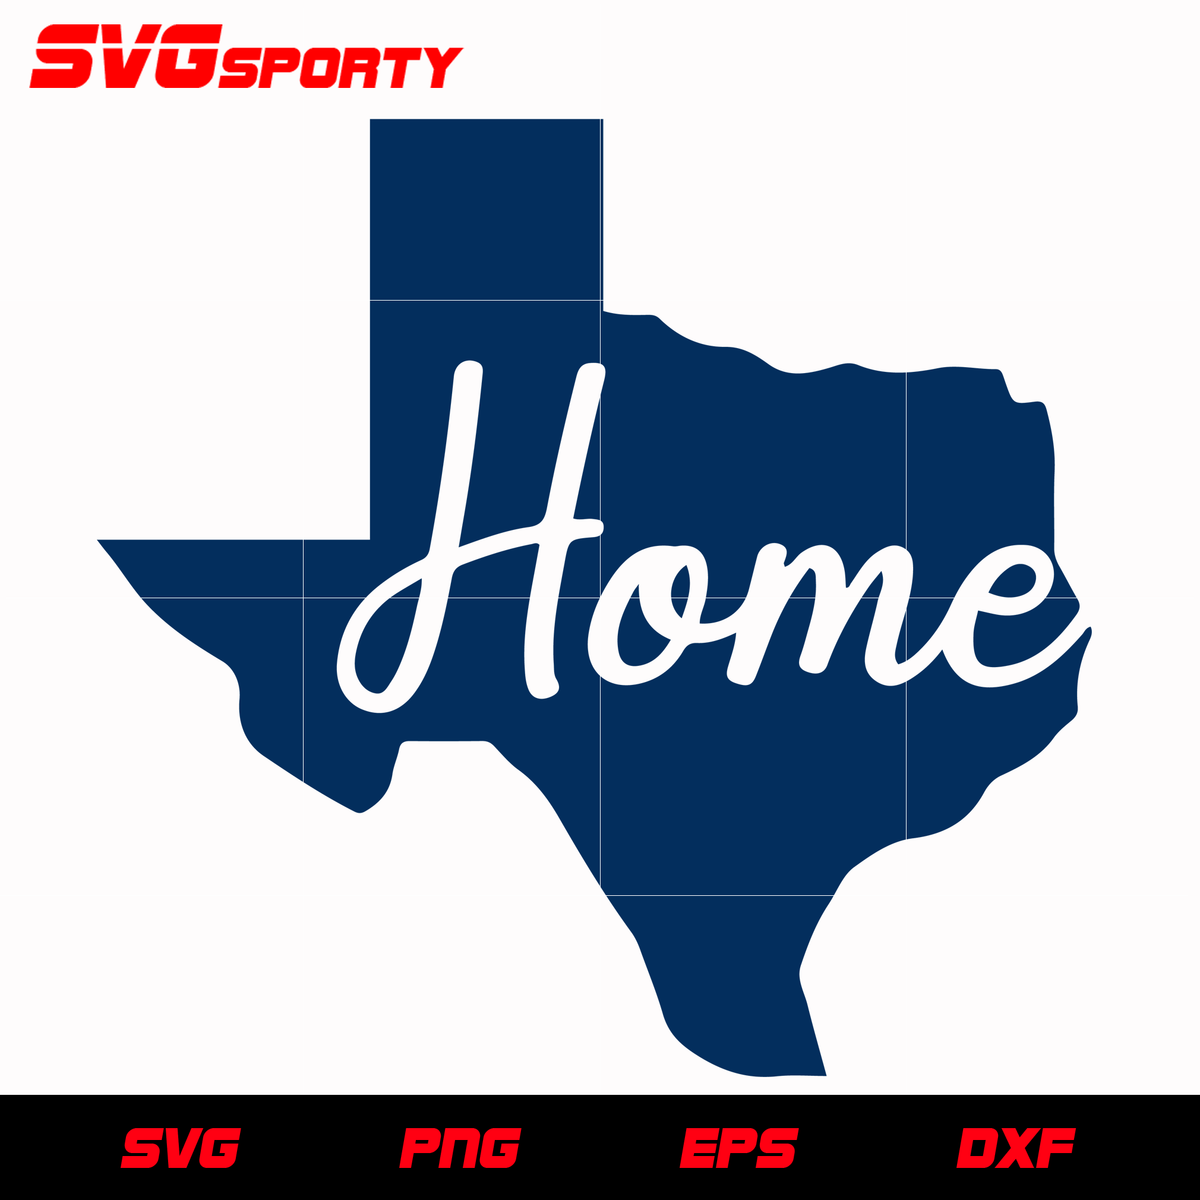 Dallas Cowboys Home SVG, NFL svg, eps, dxf, png, digital file SVG Sporty